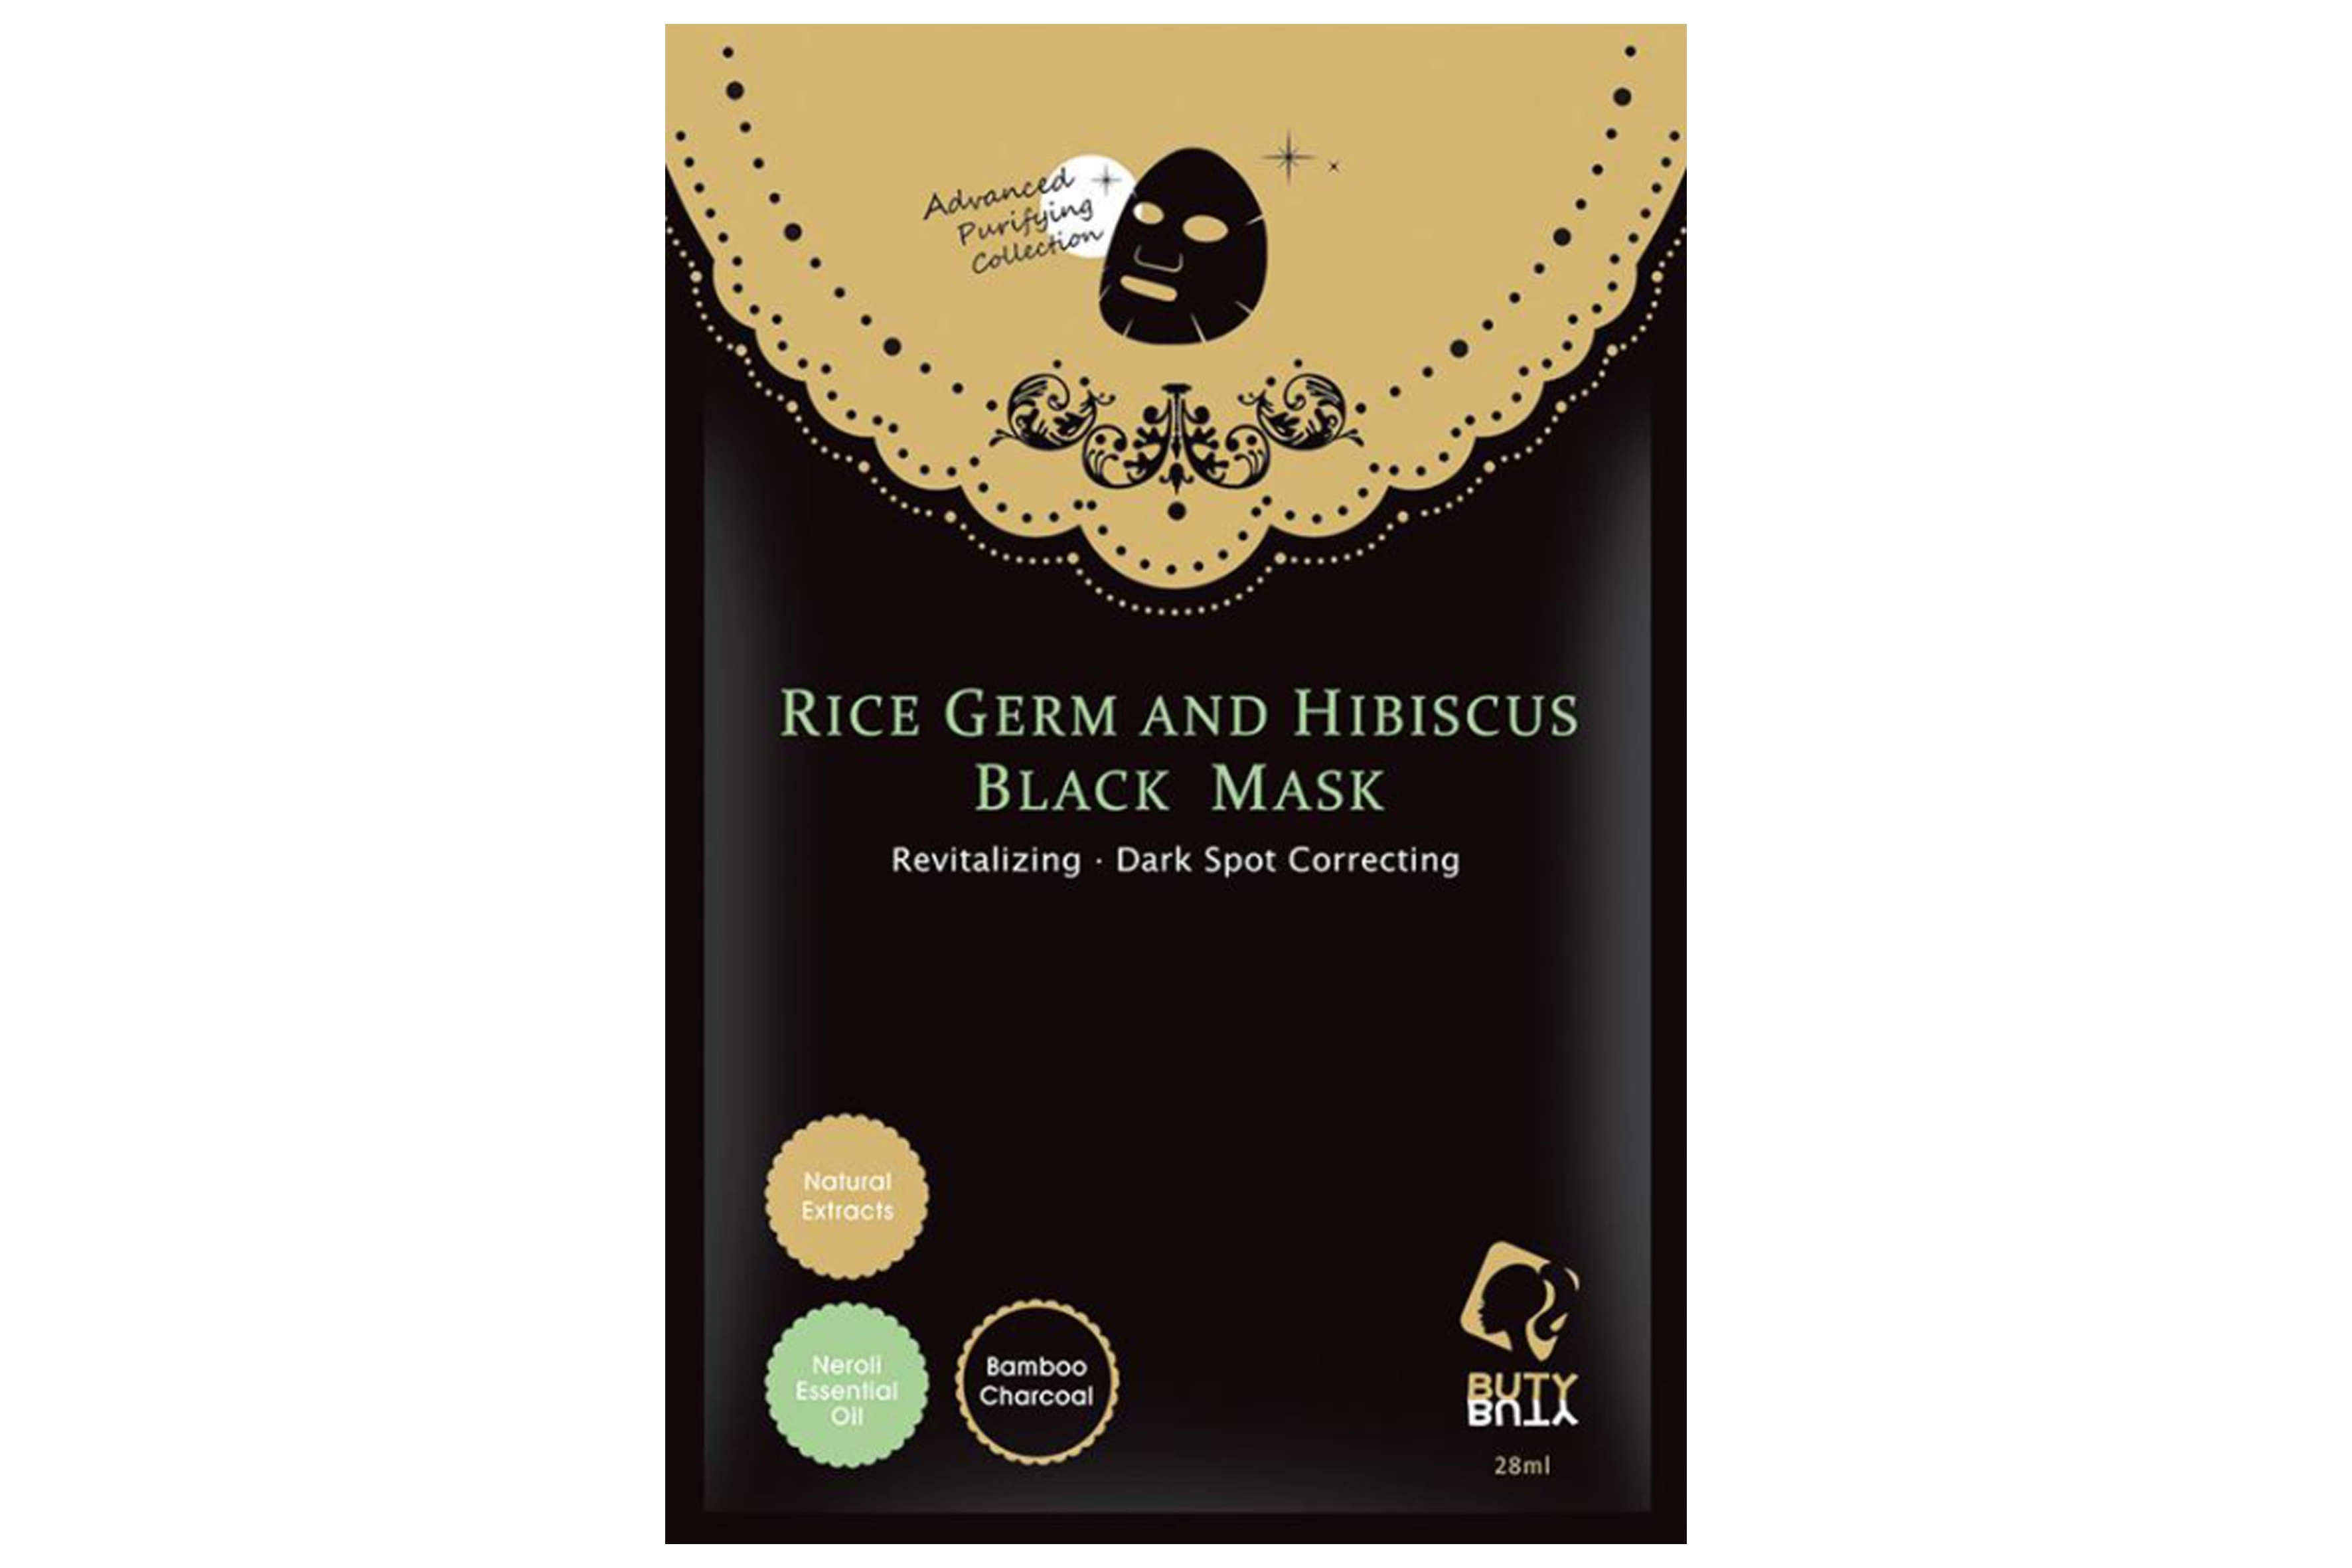 Combo 5 mặt nạ đen BUTYBUTY mầm gạo và hoa dâm bụt  Combo 5 sheets BUTYBUTY Rice Germ and Hibiscus Black Mask